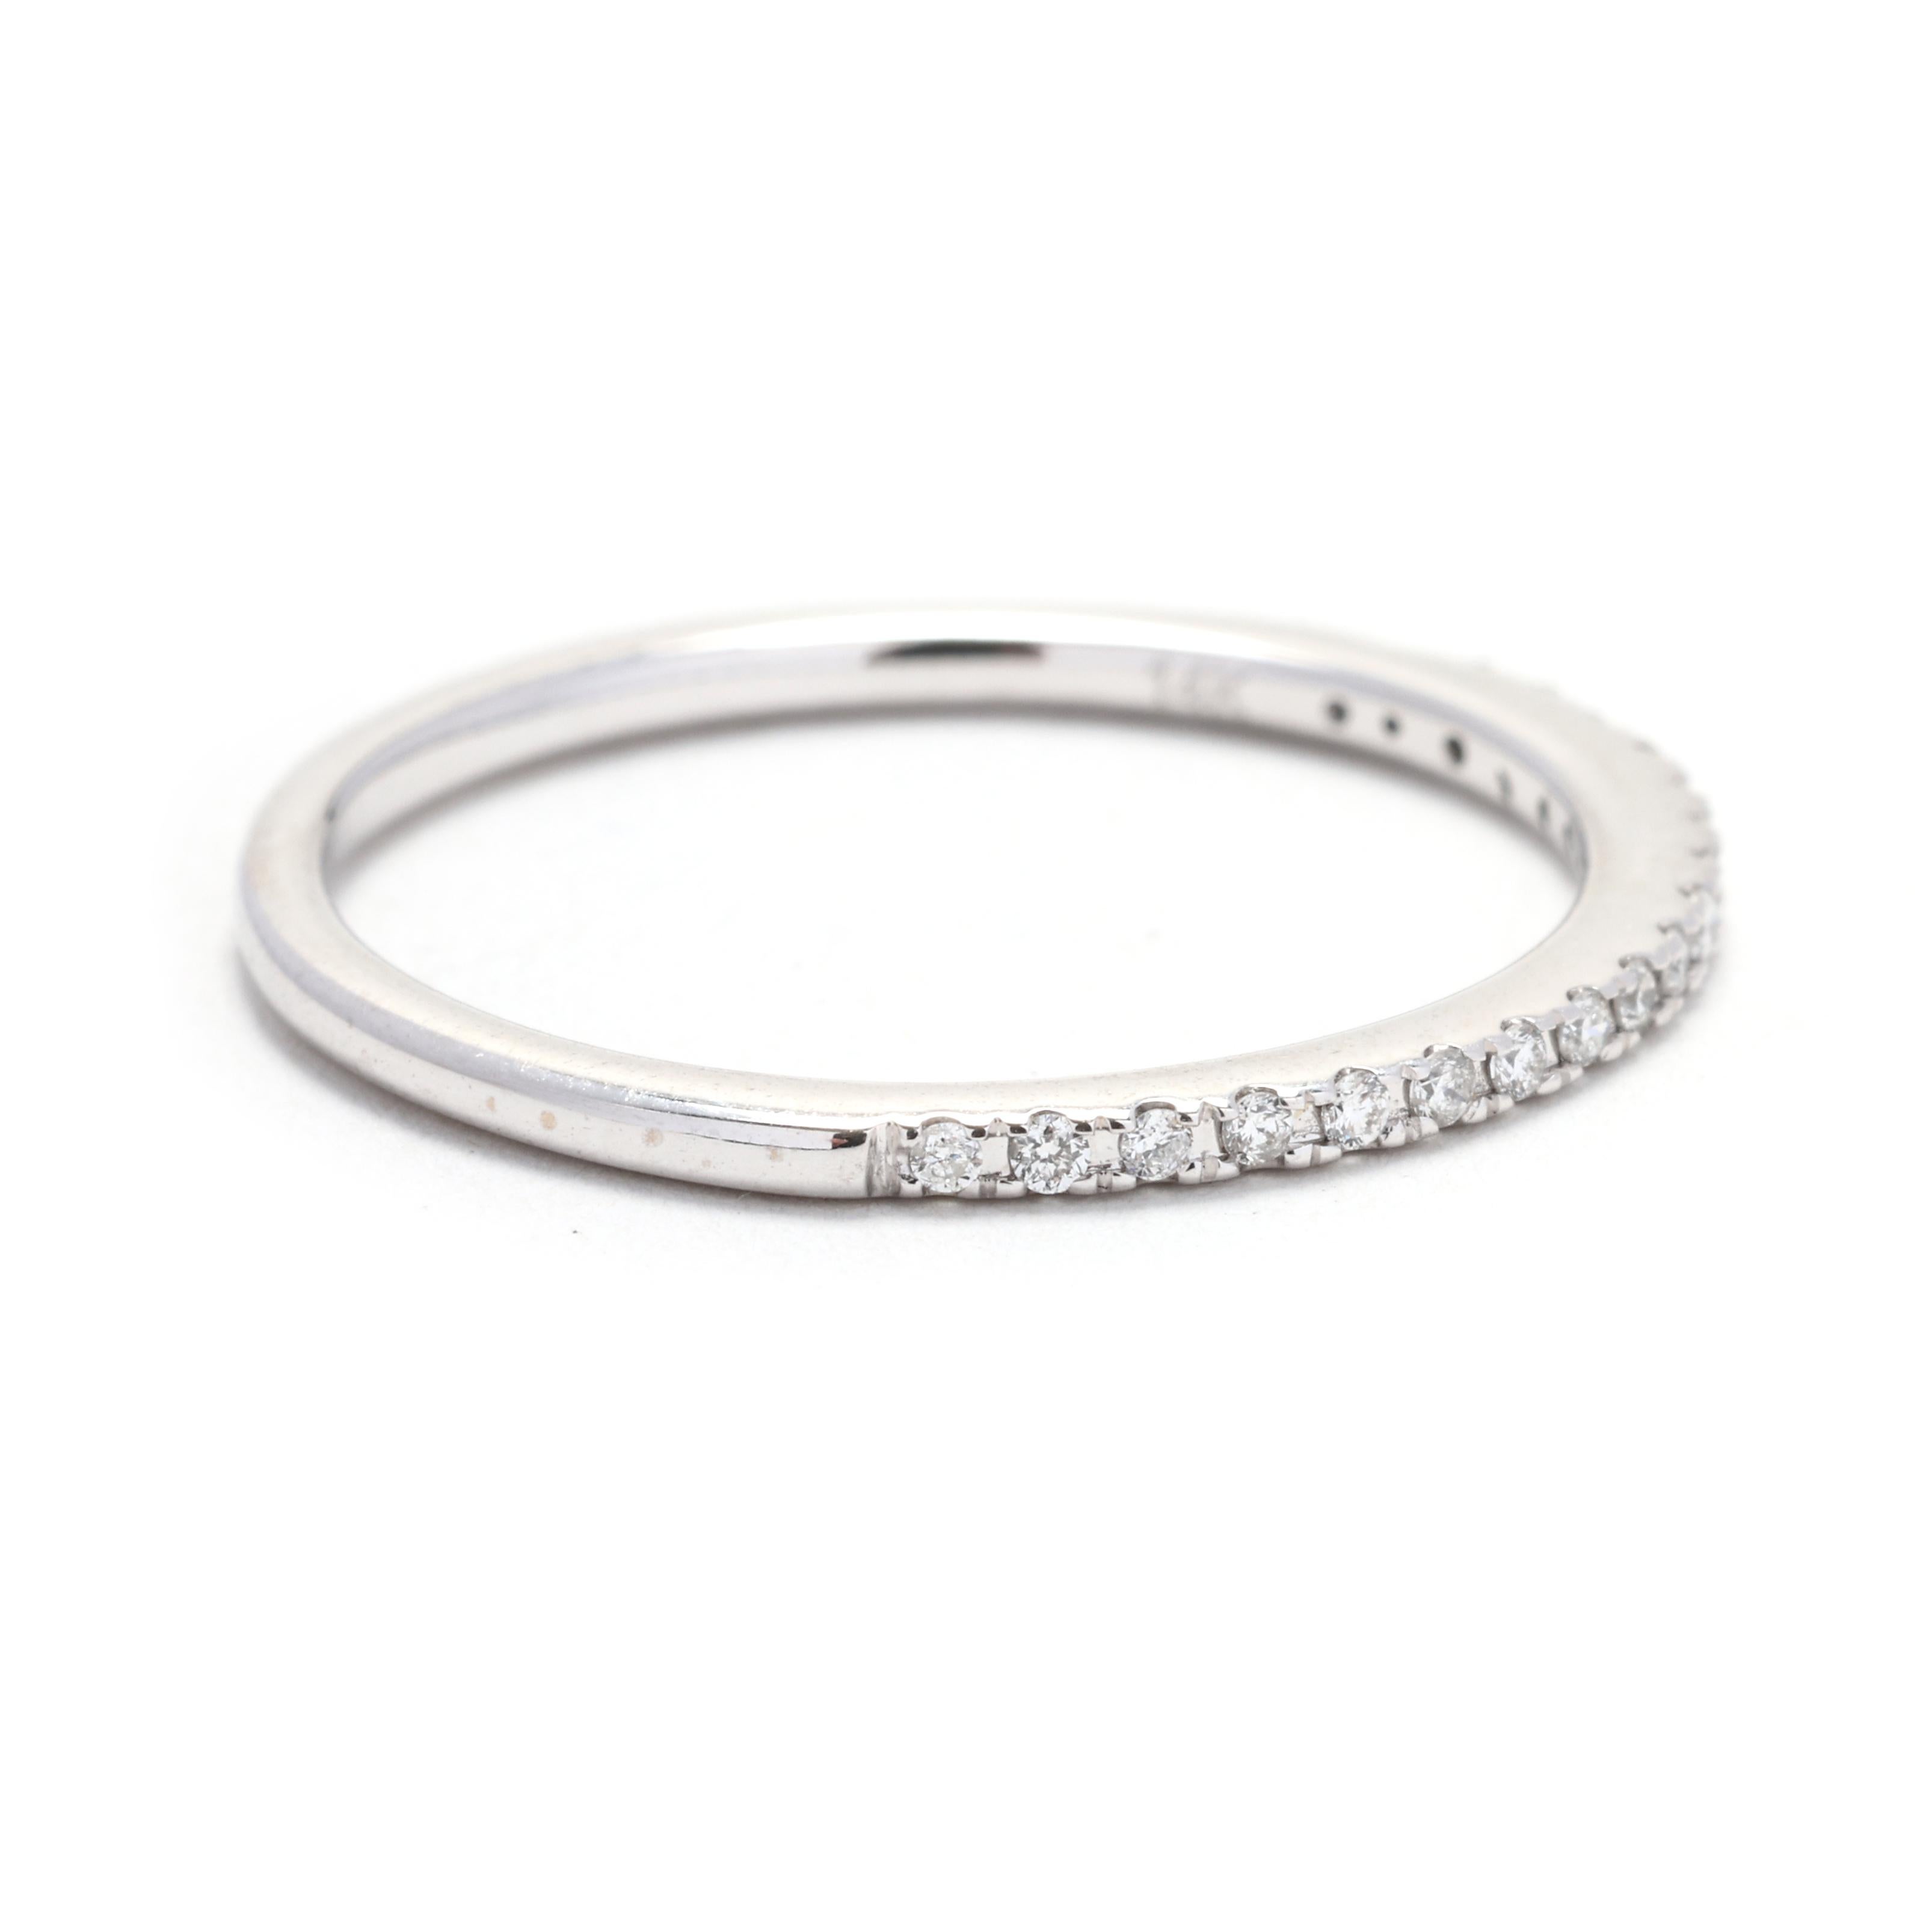 Dieser zarte und elegante Diamantring mit dünnem Band ist die perfekte Ergänzung für Ihre Schmucksammlung. Dieser Ring aus 14 Karat Weißgold ist mit einer Reihe funkelnder Diamanten von insgesamt 0,10 Karat besetzt. Das klassische und zeitlose